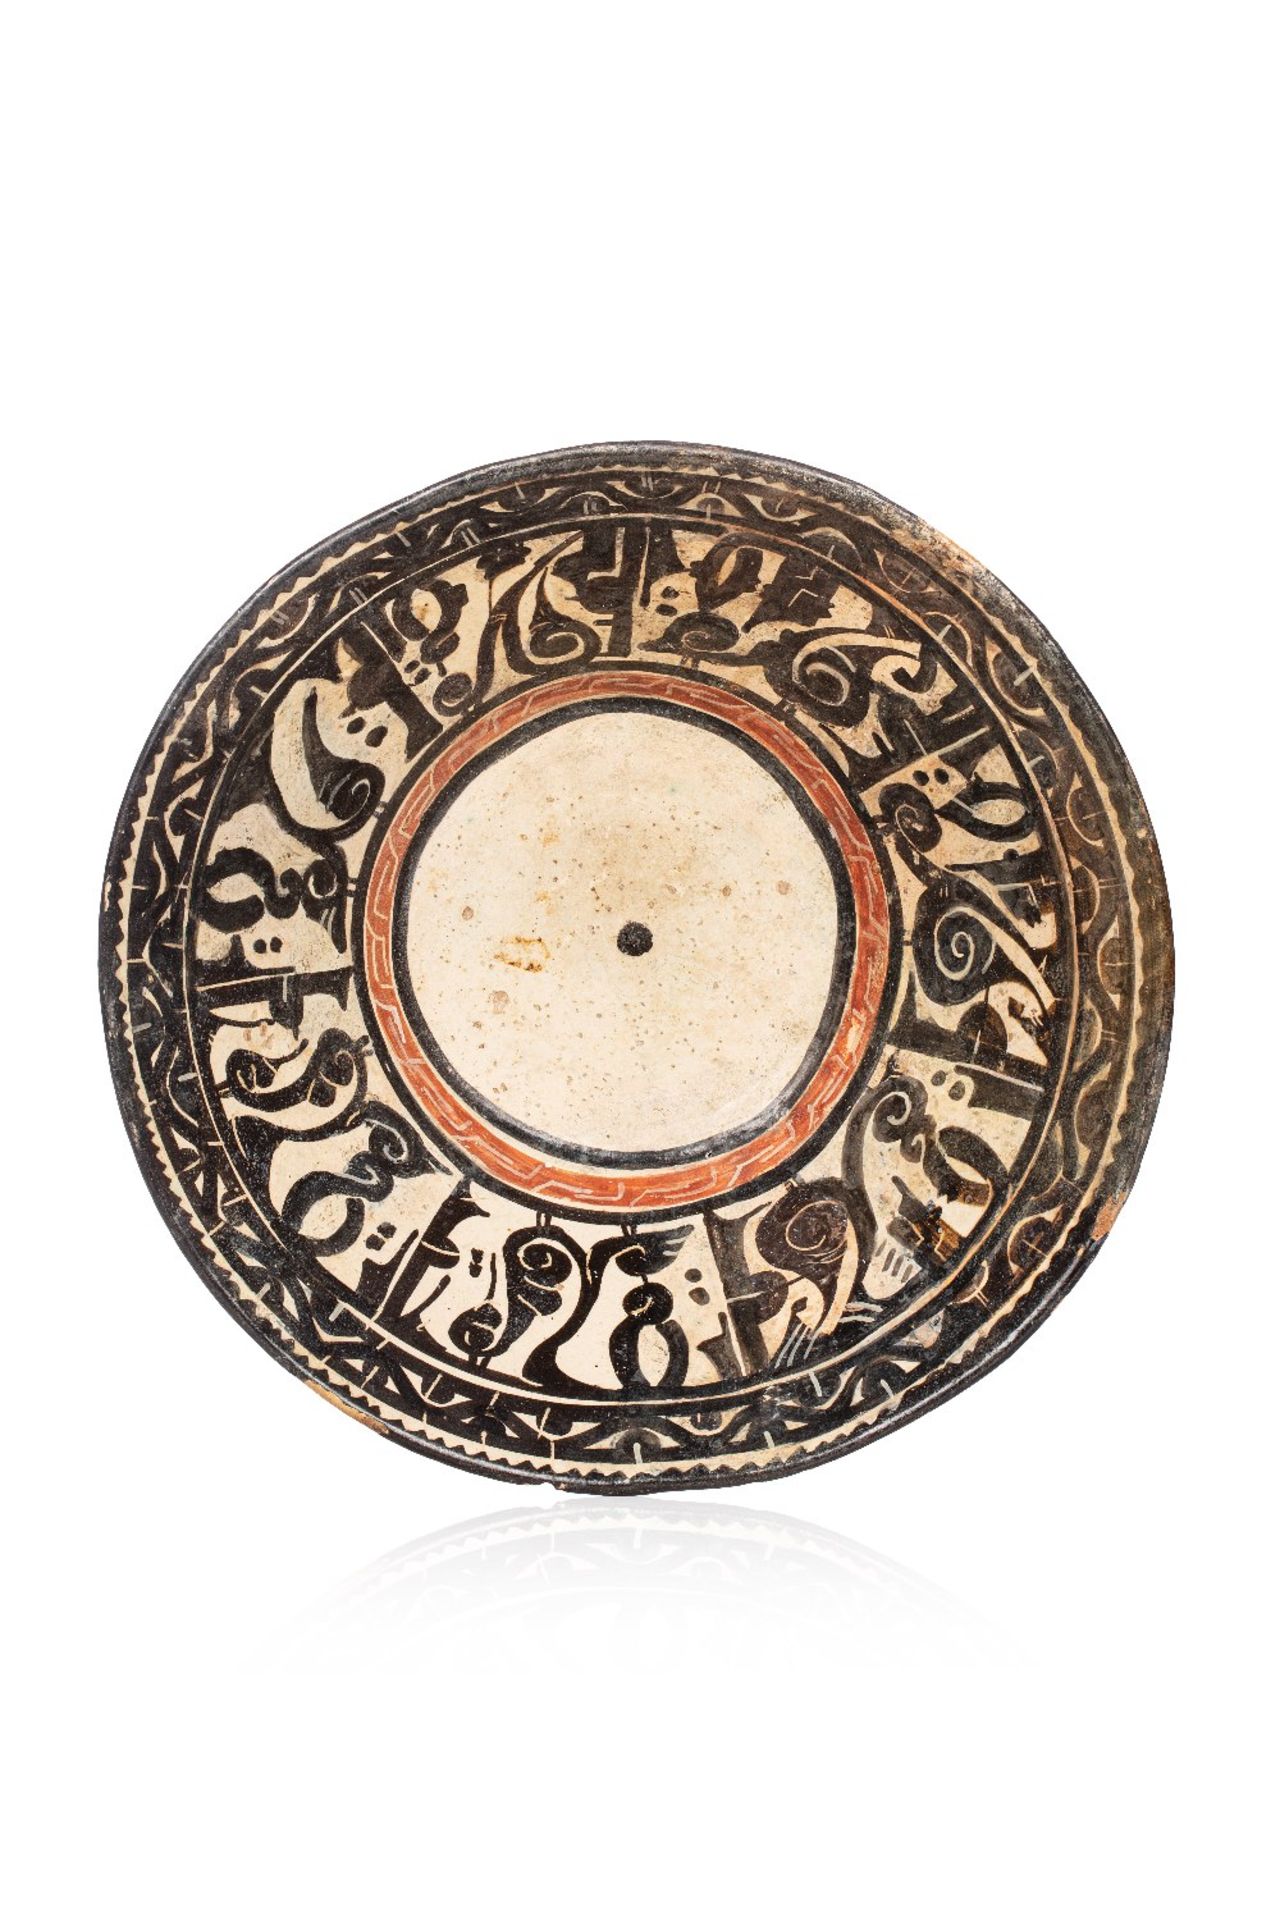 Coupe de Nishapur ou SamarcandeIran oriental, Xe siècleCoupe tronconique reposant sur piédouche,